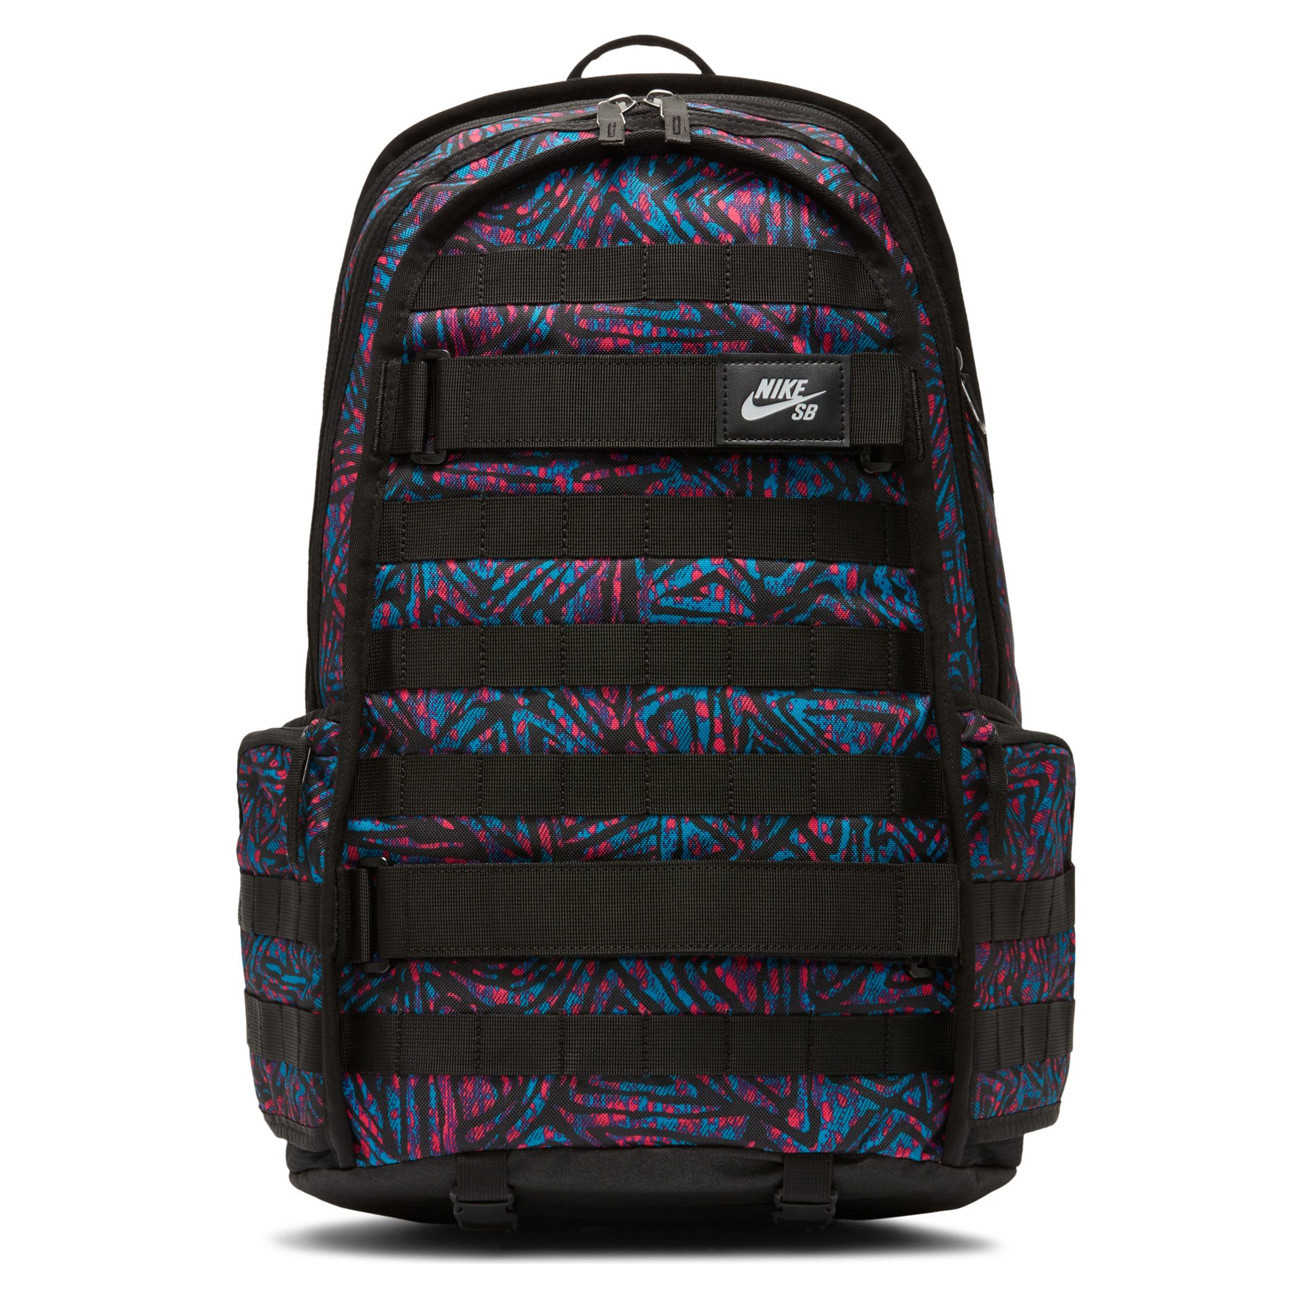 Backpack Nike SB RPM black/laser blue 